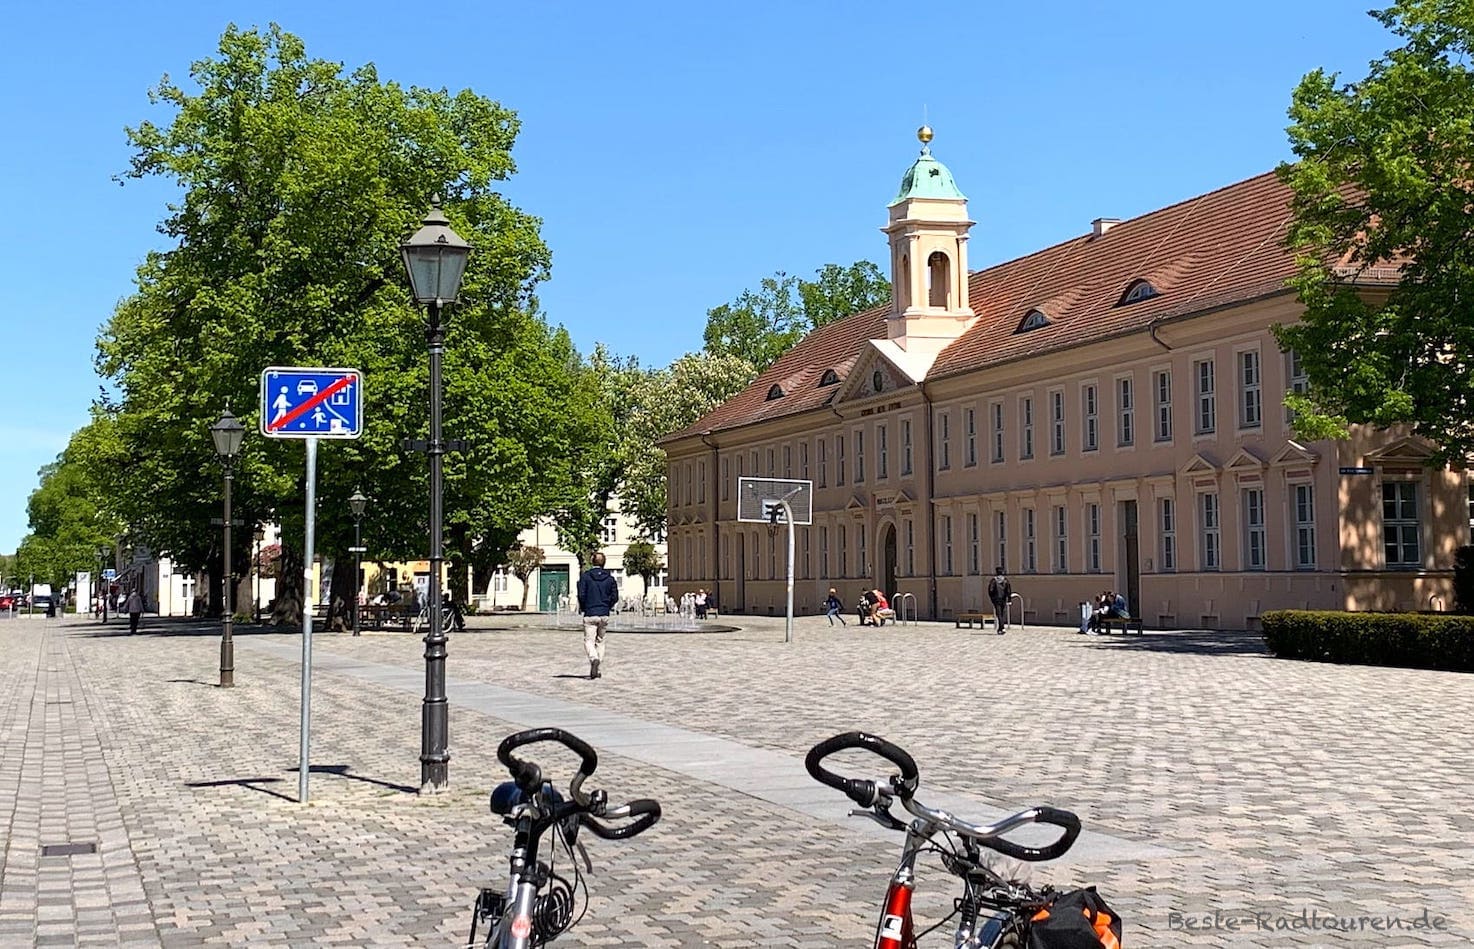 Das Alte Gymnasium ist das zentrale Gebäude in der historischen Altstadt von Neuruppin